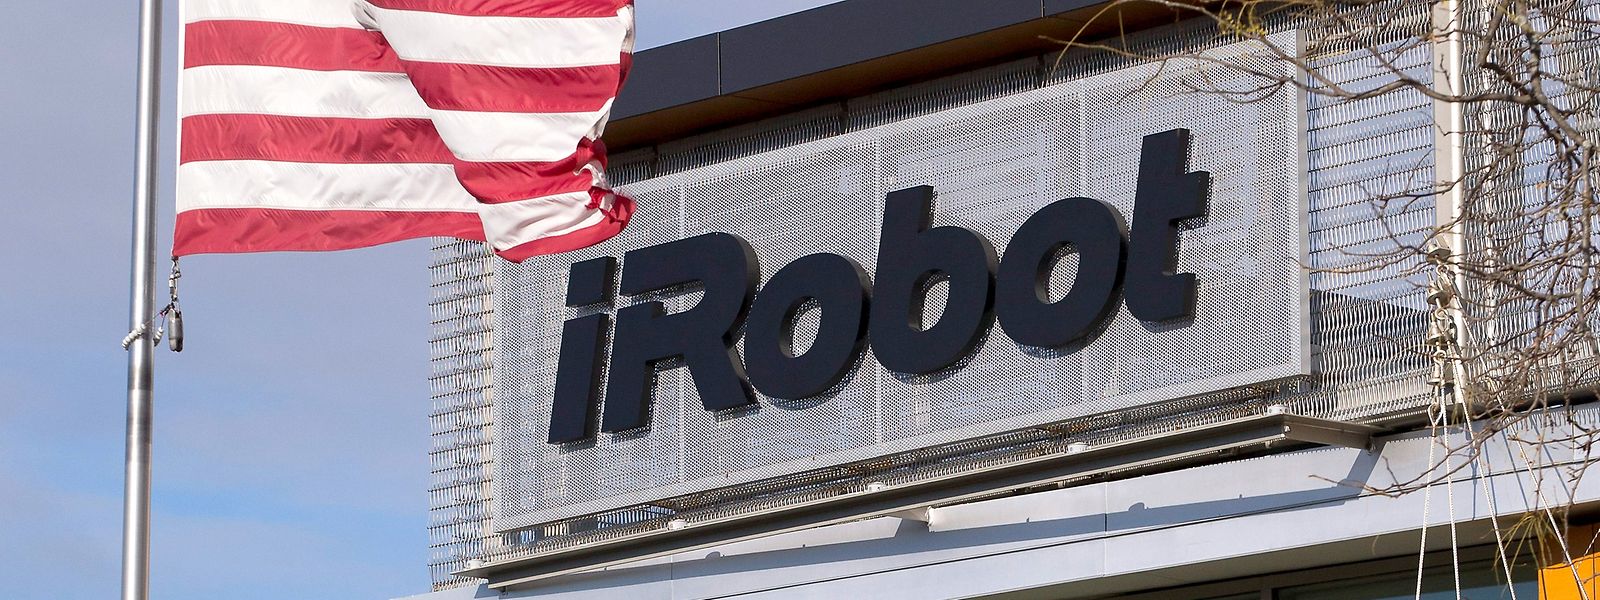 Die Staubsauger-Roboter von iRobot könnten demnächst unter der Flagge von Amazon fahren.